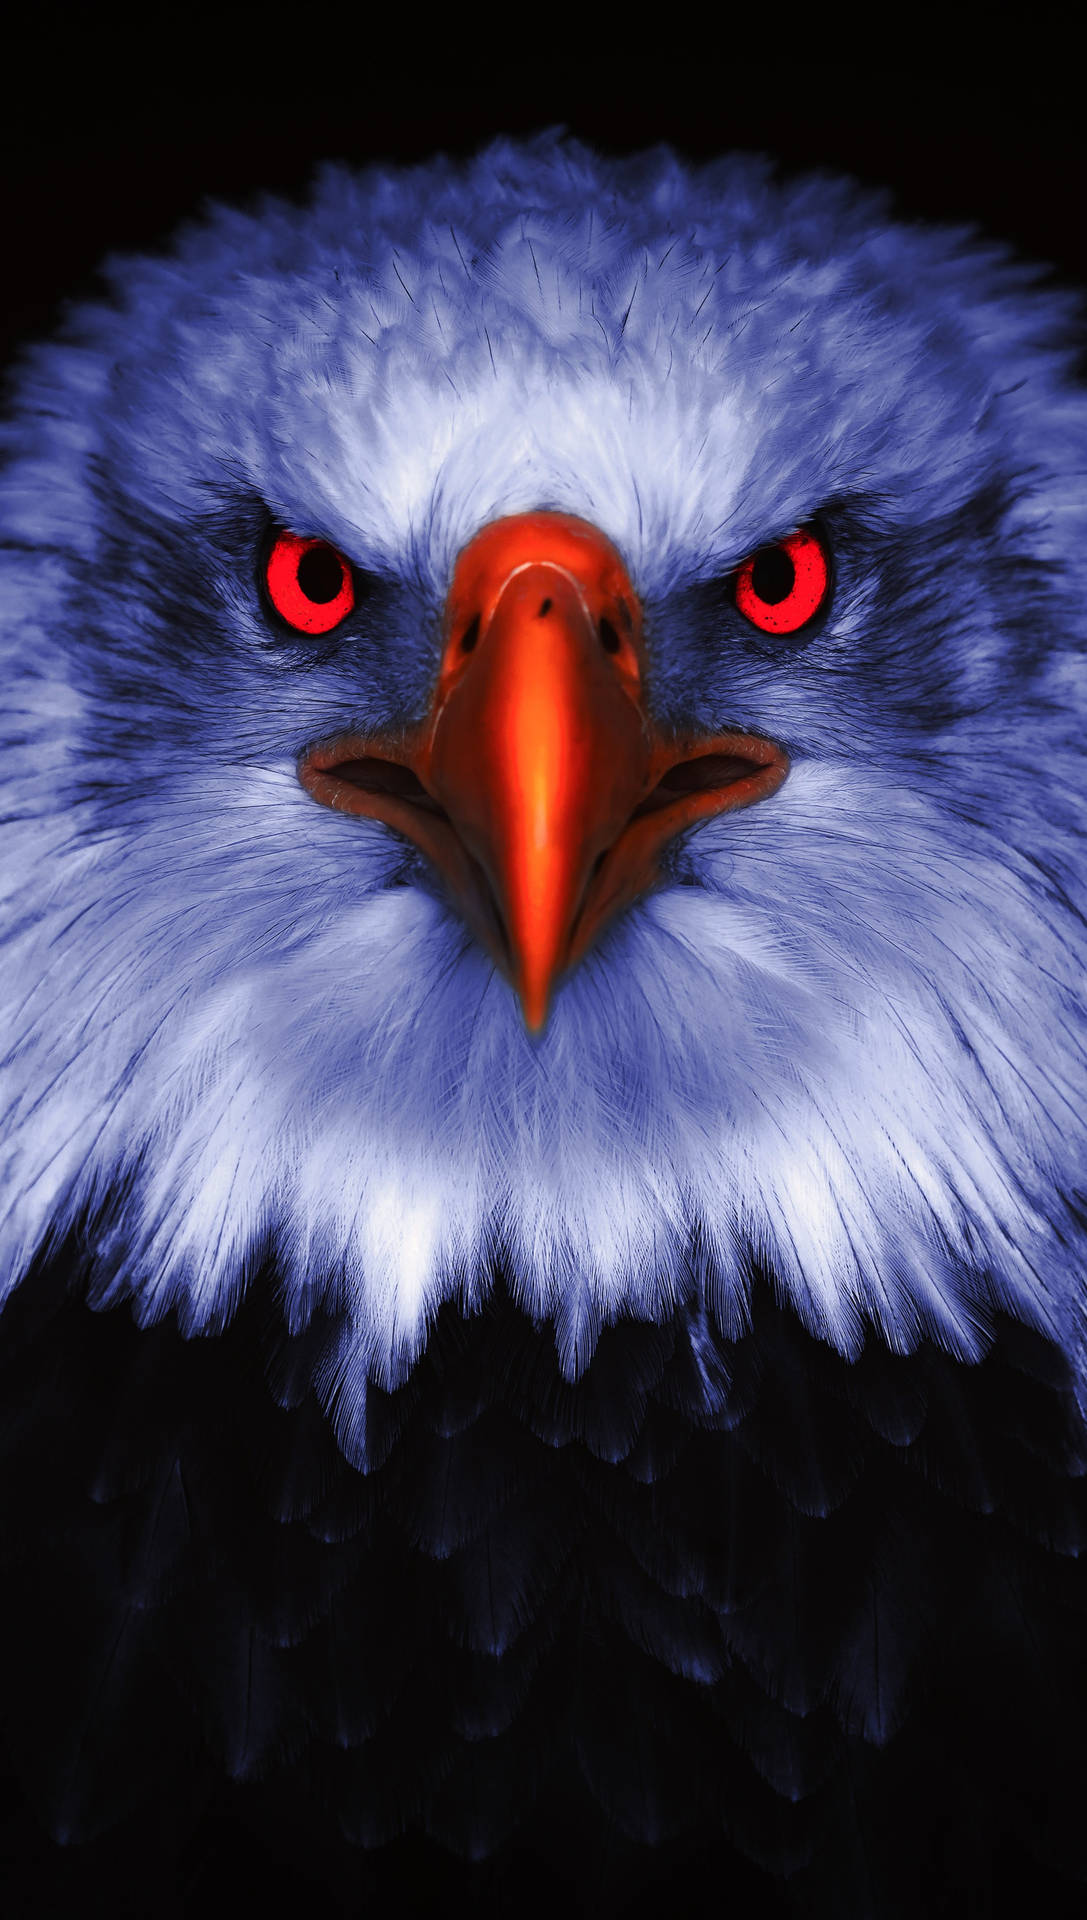 Aguilavogel Lebhafte Augen Portrait Wallpaper